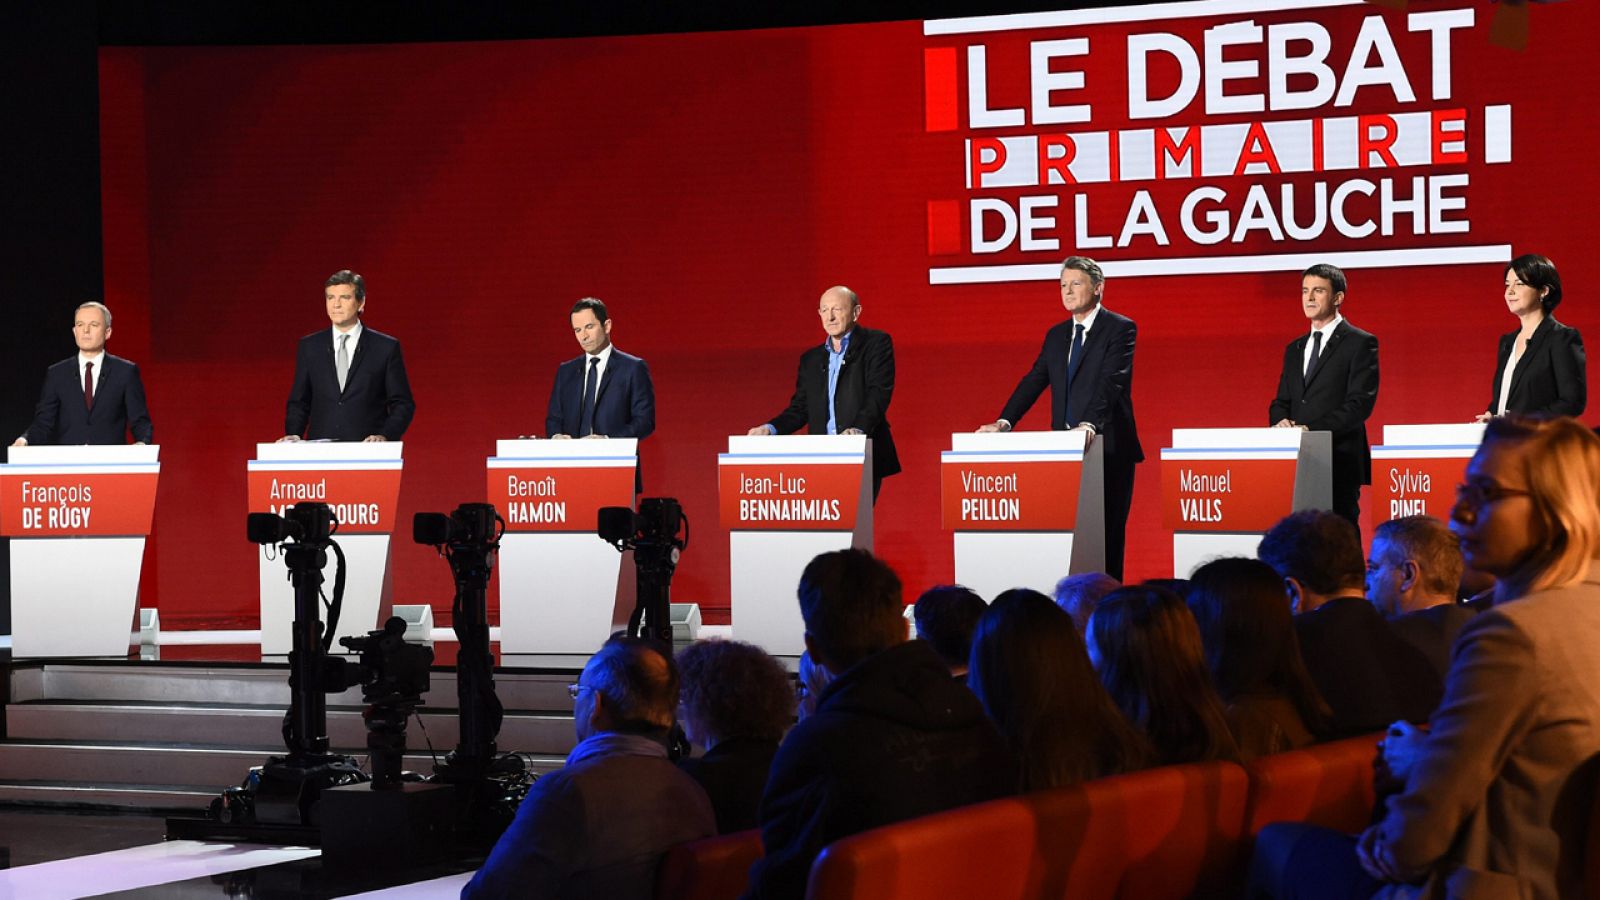 Segundo debate televisivo de los aspirantes en primarias a la candidatura socialista en Francia